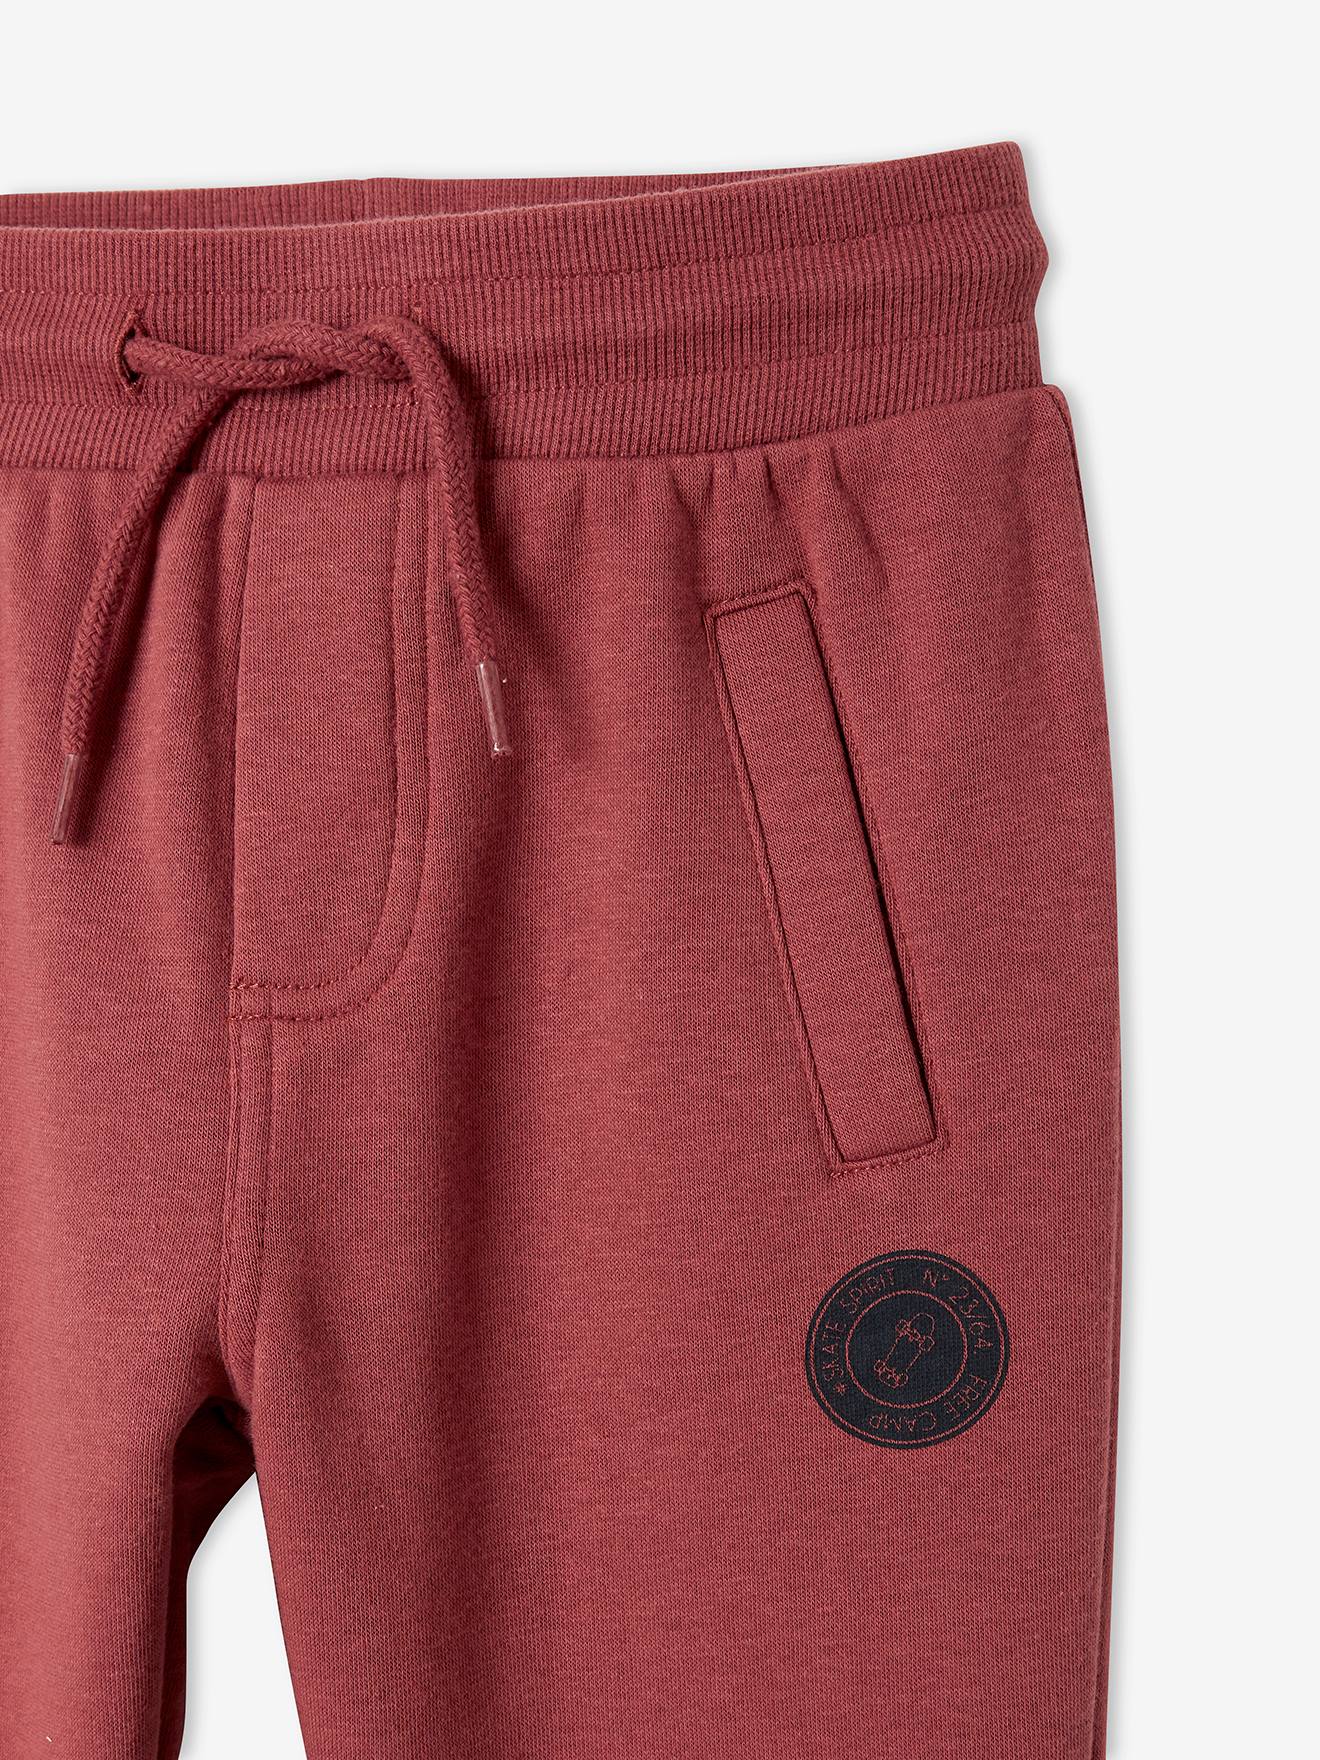 Pantalones cortos Zeco vendidos por Essential Wear para colegio color gris y azul marino 